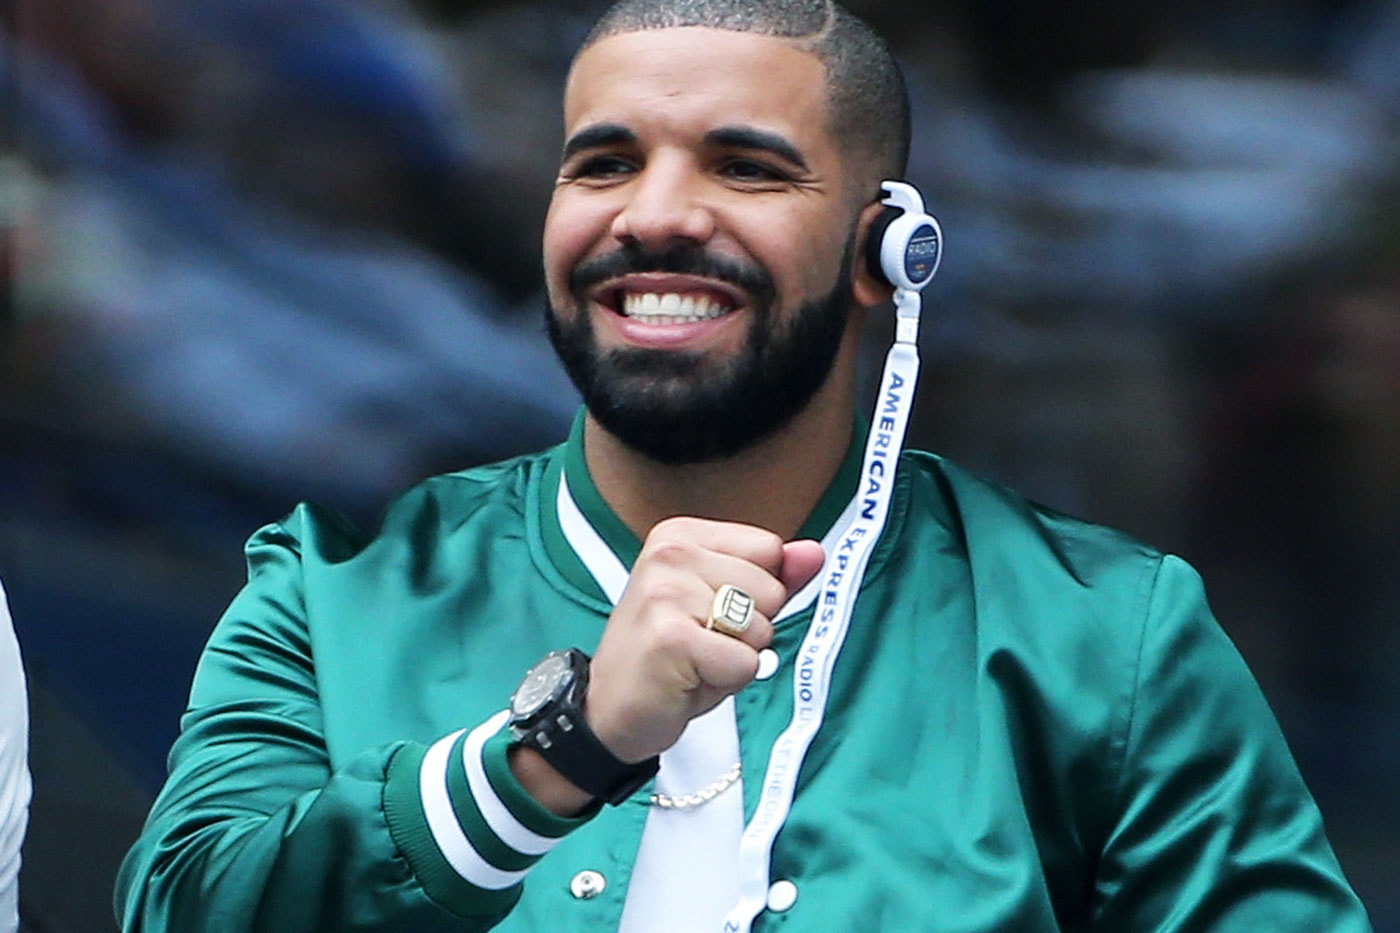 Drake Announces "Hotline Bling" Video